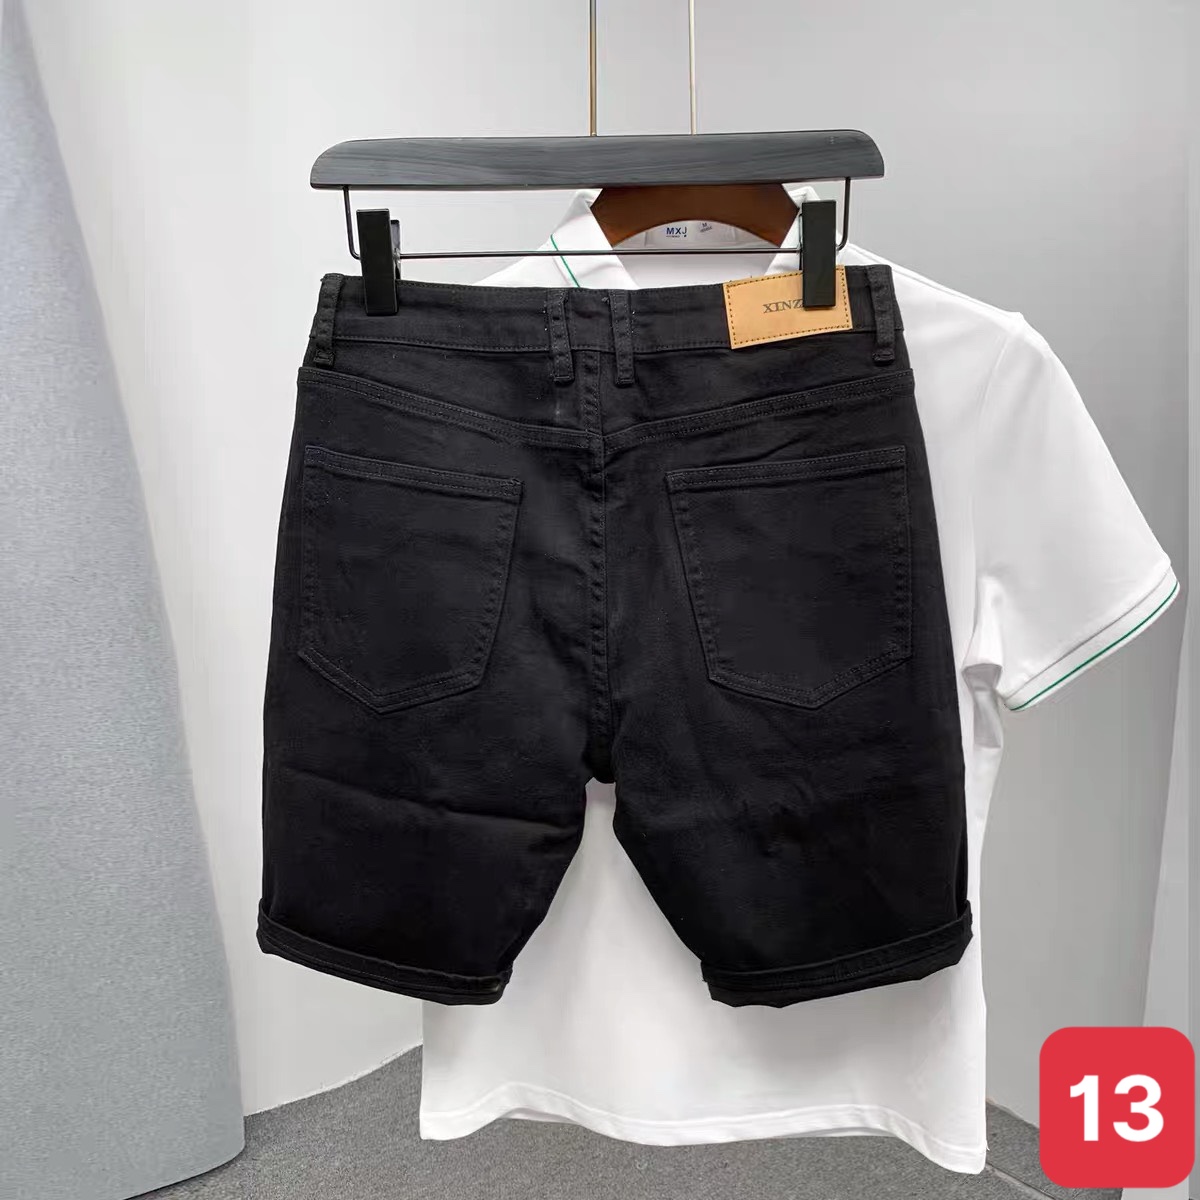 Chia sẻ hơn 162 về quần jean mỏng nam mới nhất